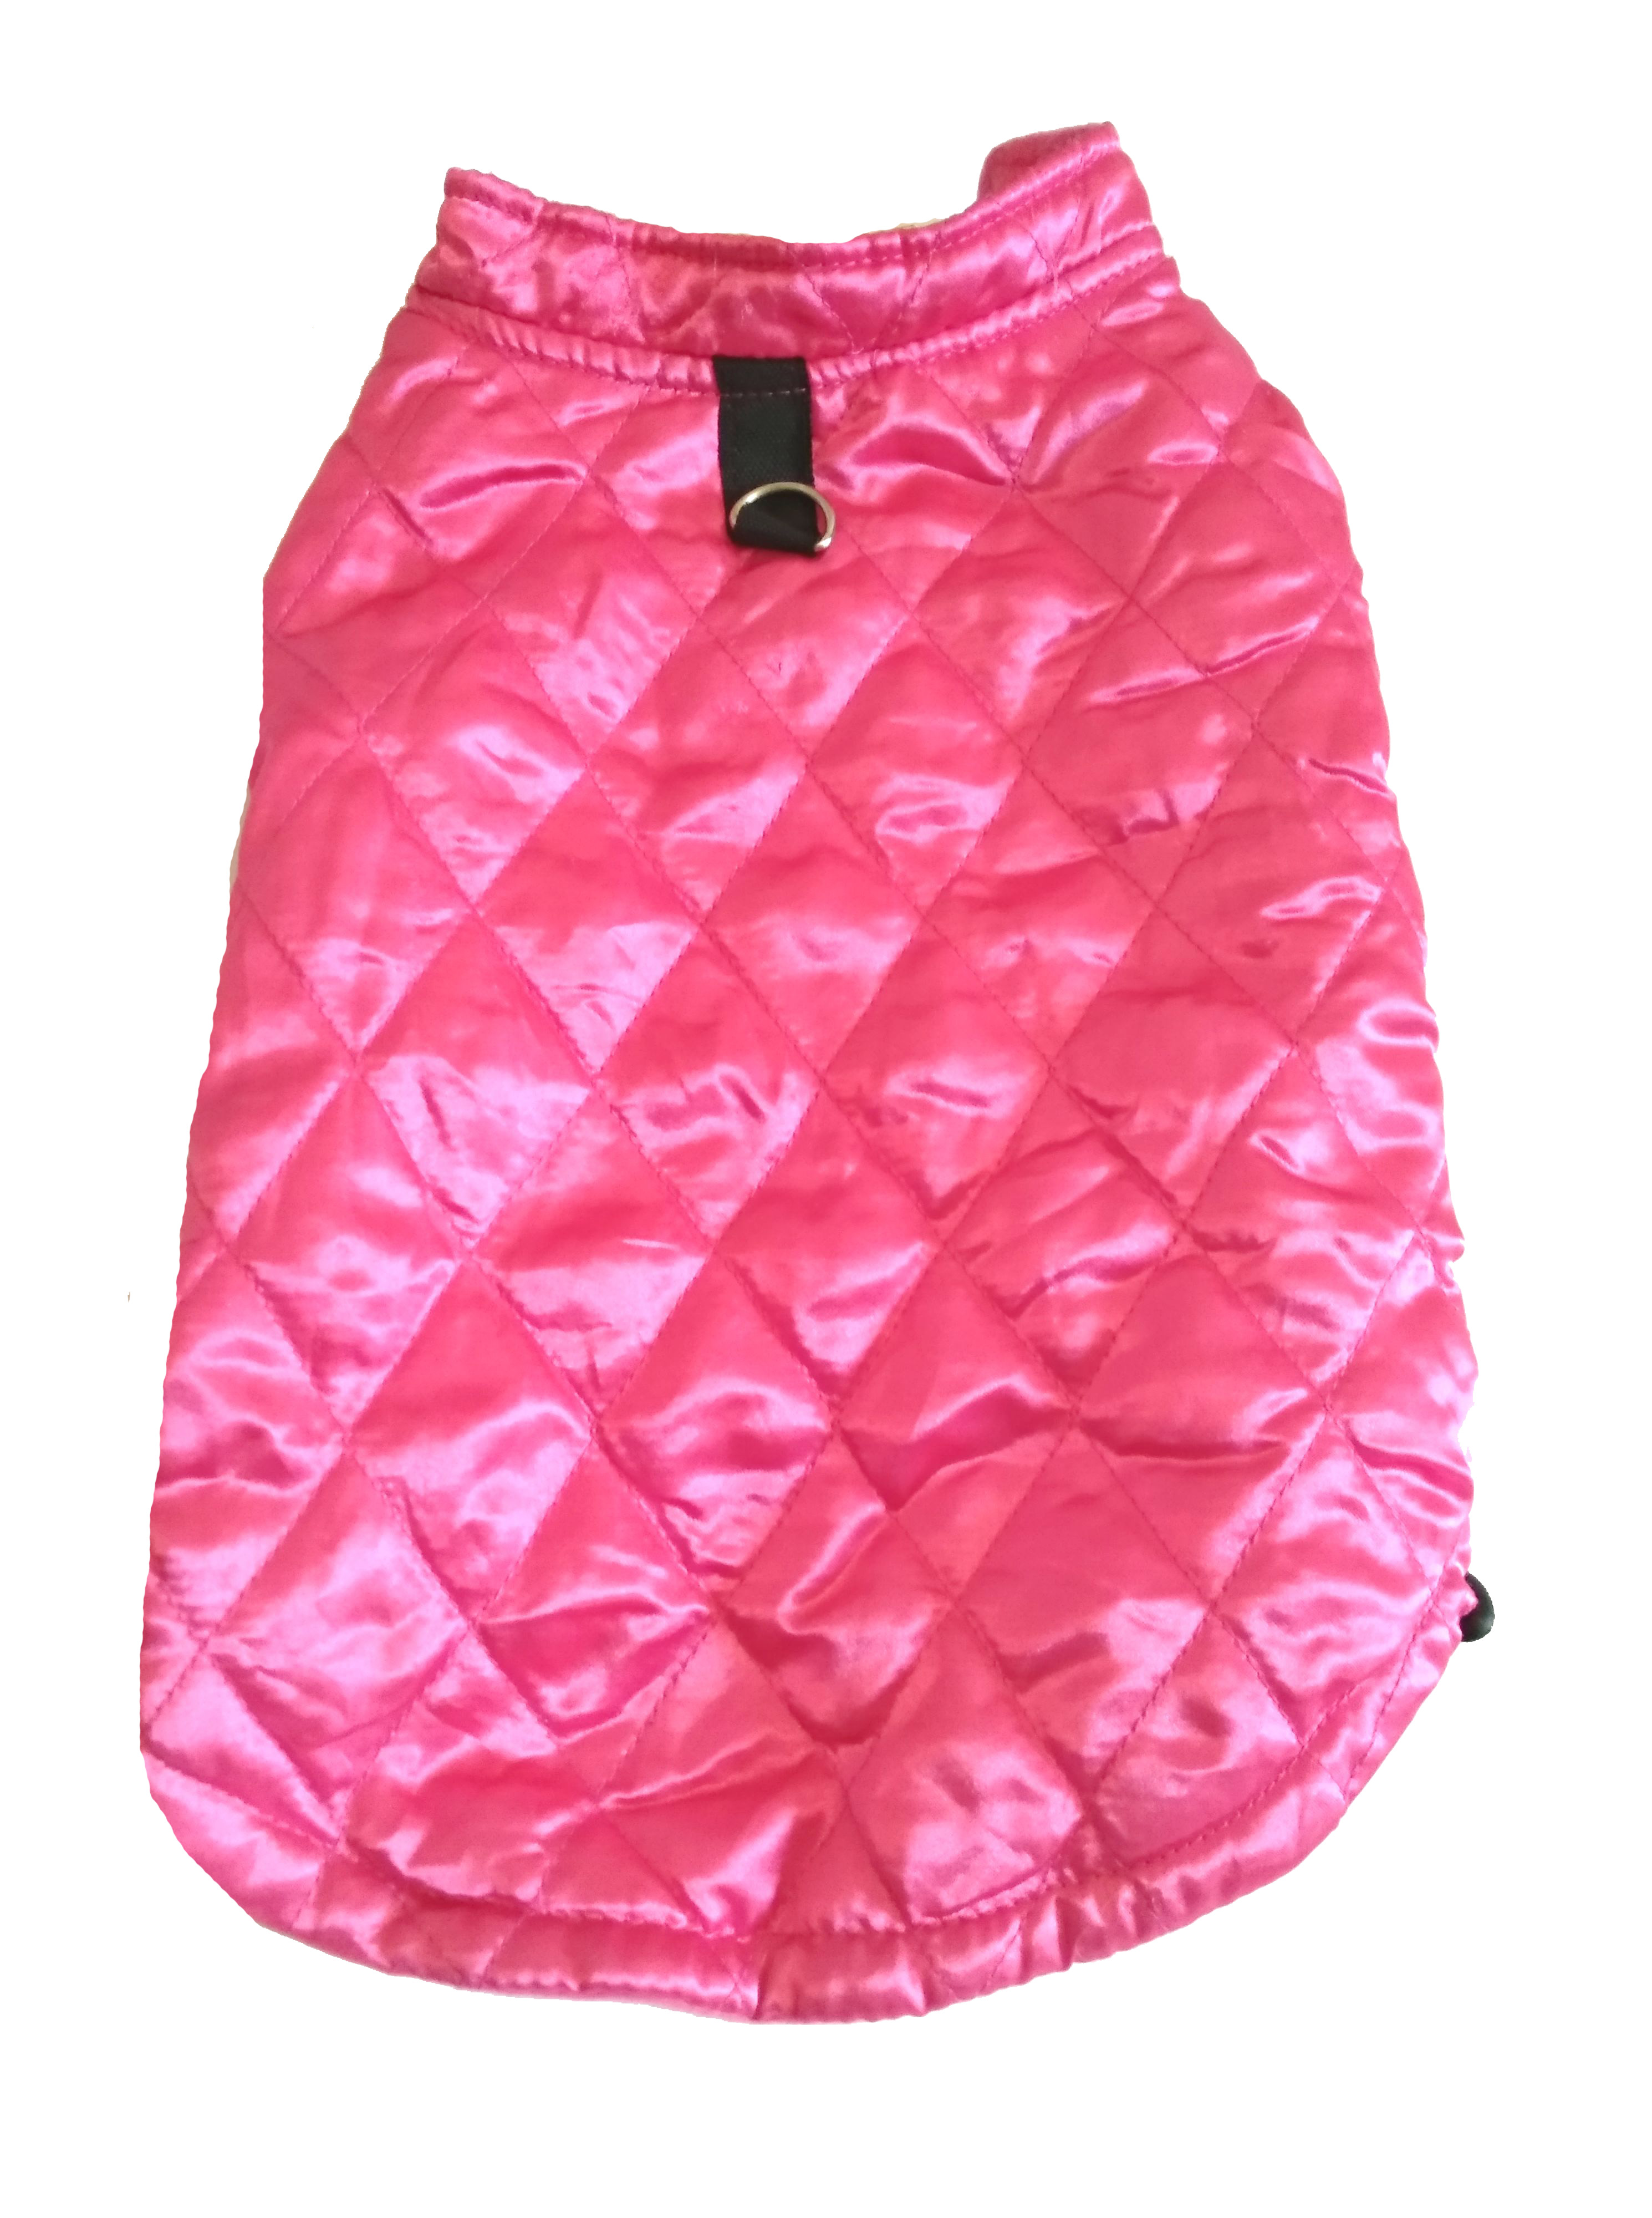 Rózsaszín/pink kutyaruha, kabát. Háthossz 36 cm. 